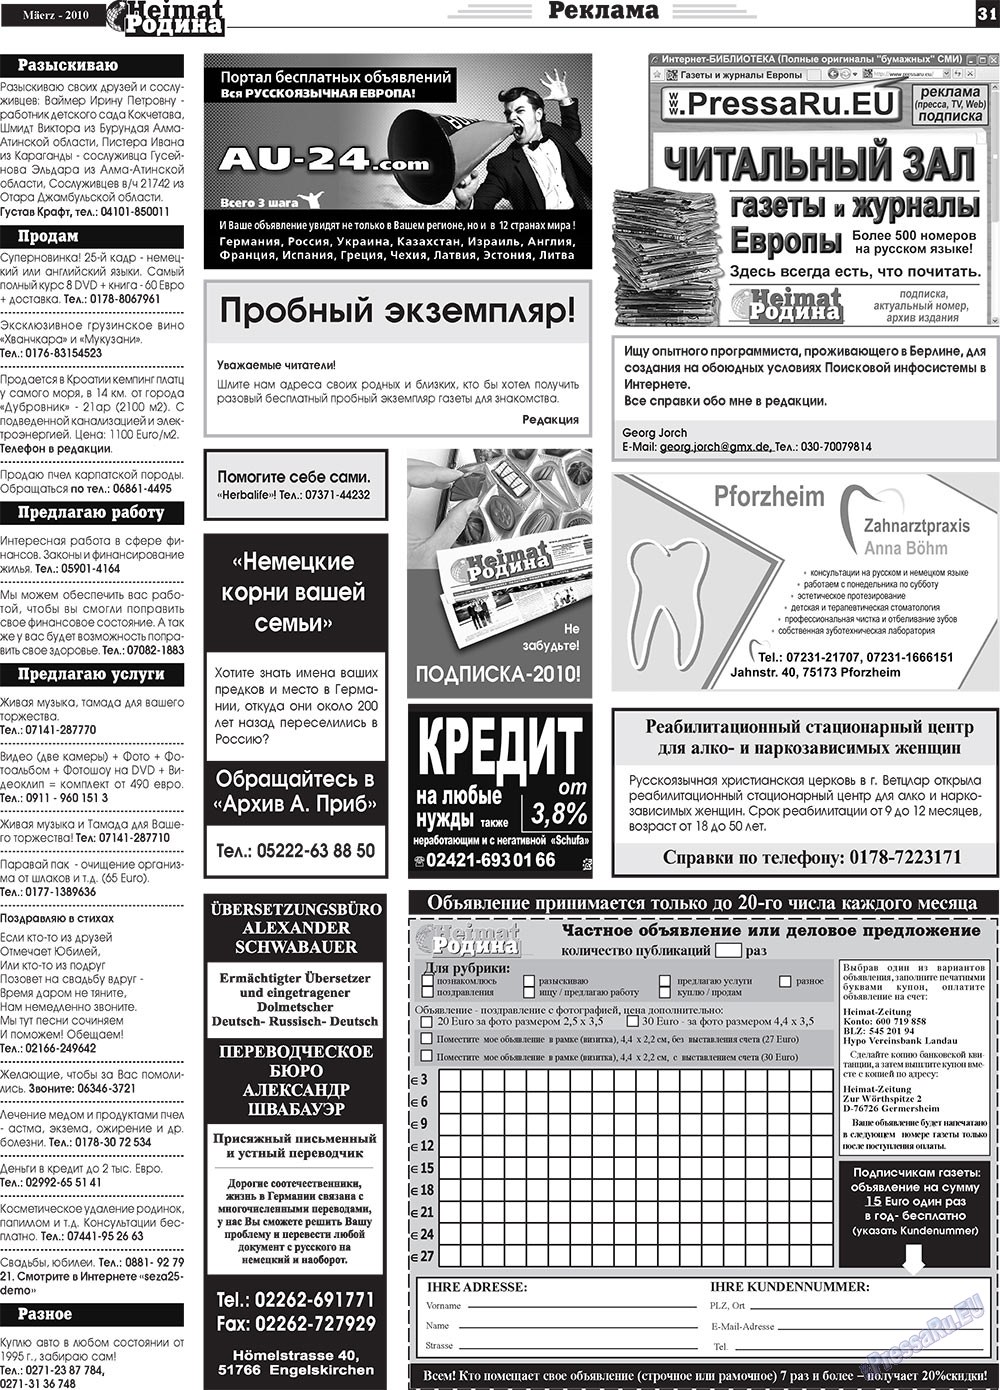 Heimat-Родина (газета). 2010 год, номер 3, стр. 31